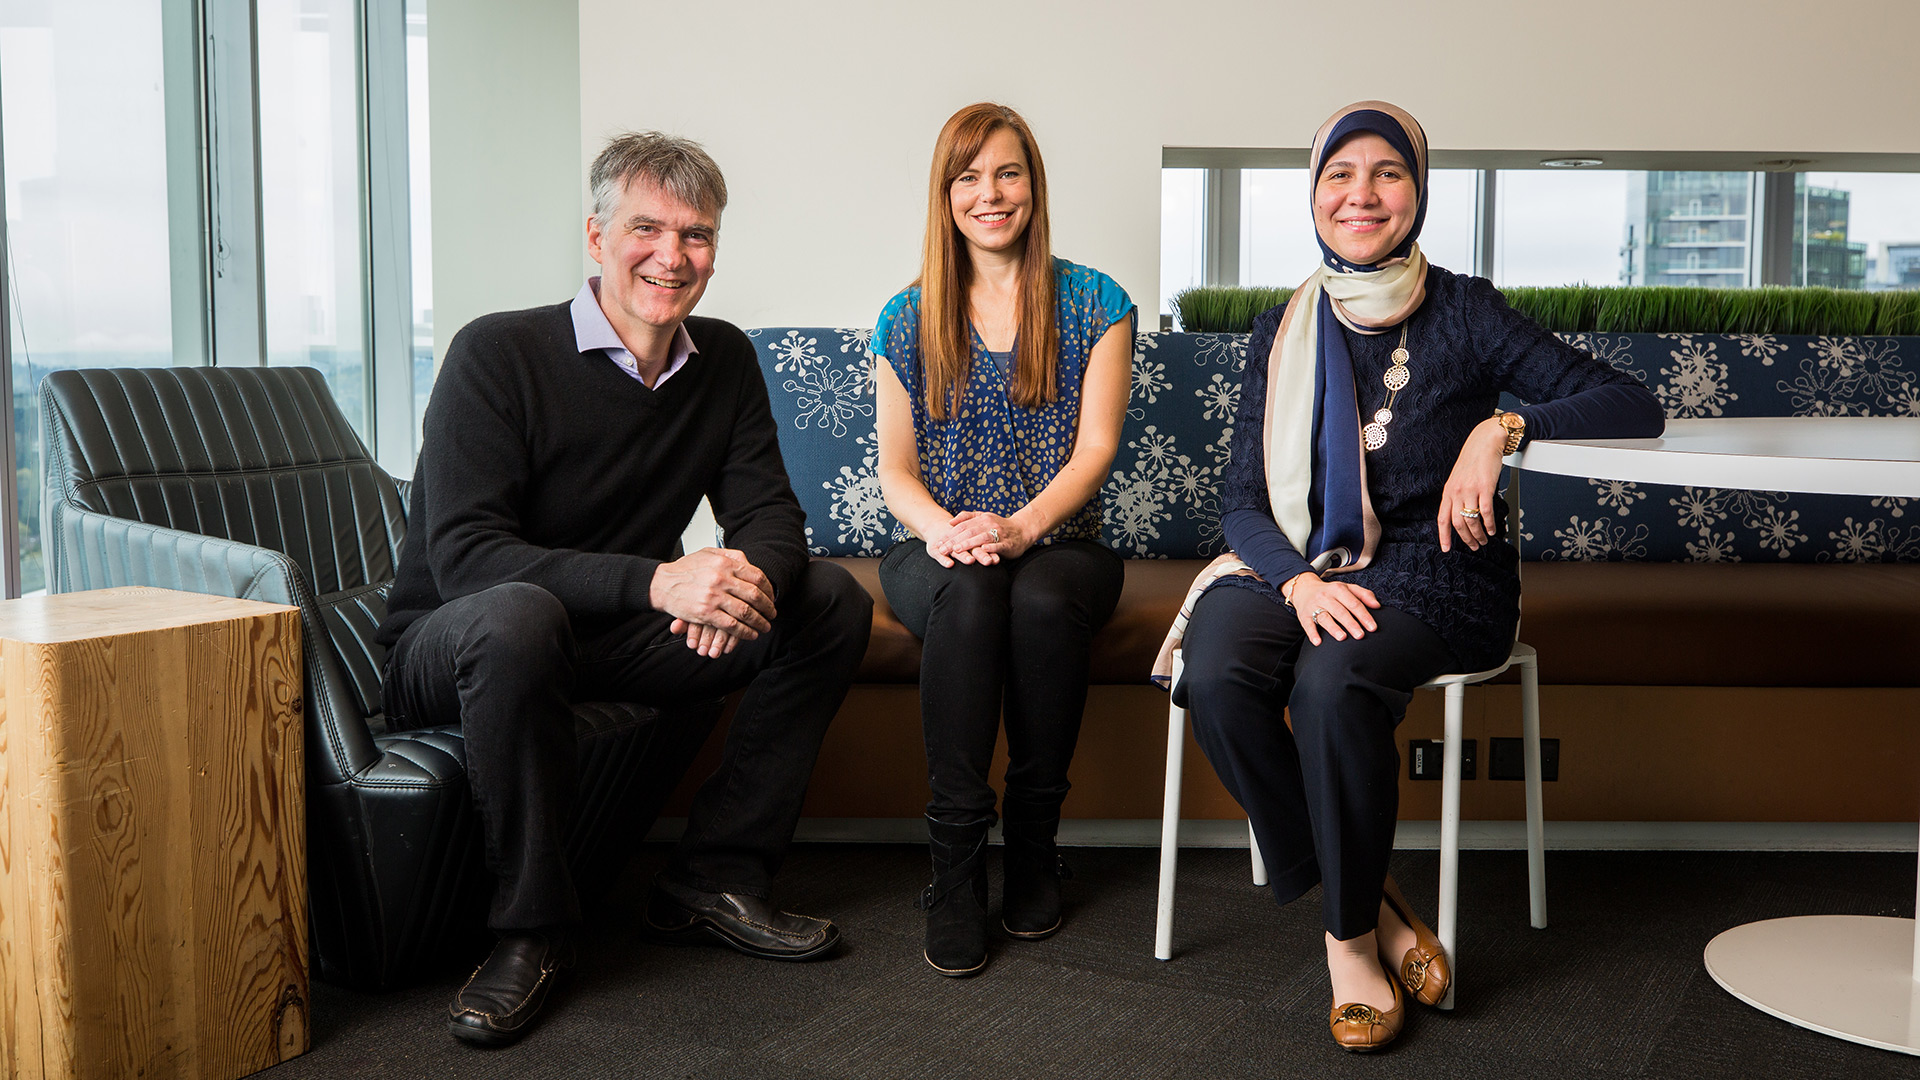 Los investigadores de Microsoft Patrice Simard, Alicia Edelman Pelton y Riham Mansour (de izquierda a derecha) trabajan para infundir enseñanza automática en los productos de Microsoft. Foto por Dan DeLong para Microsoft.